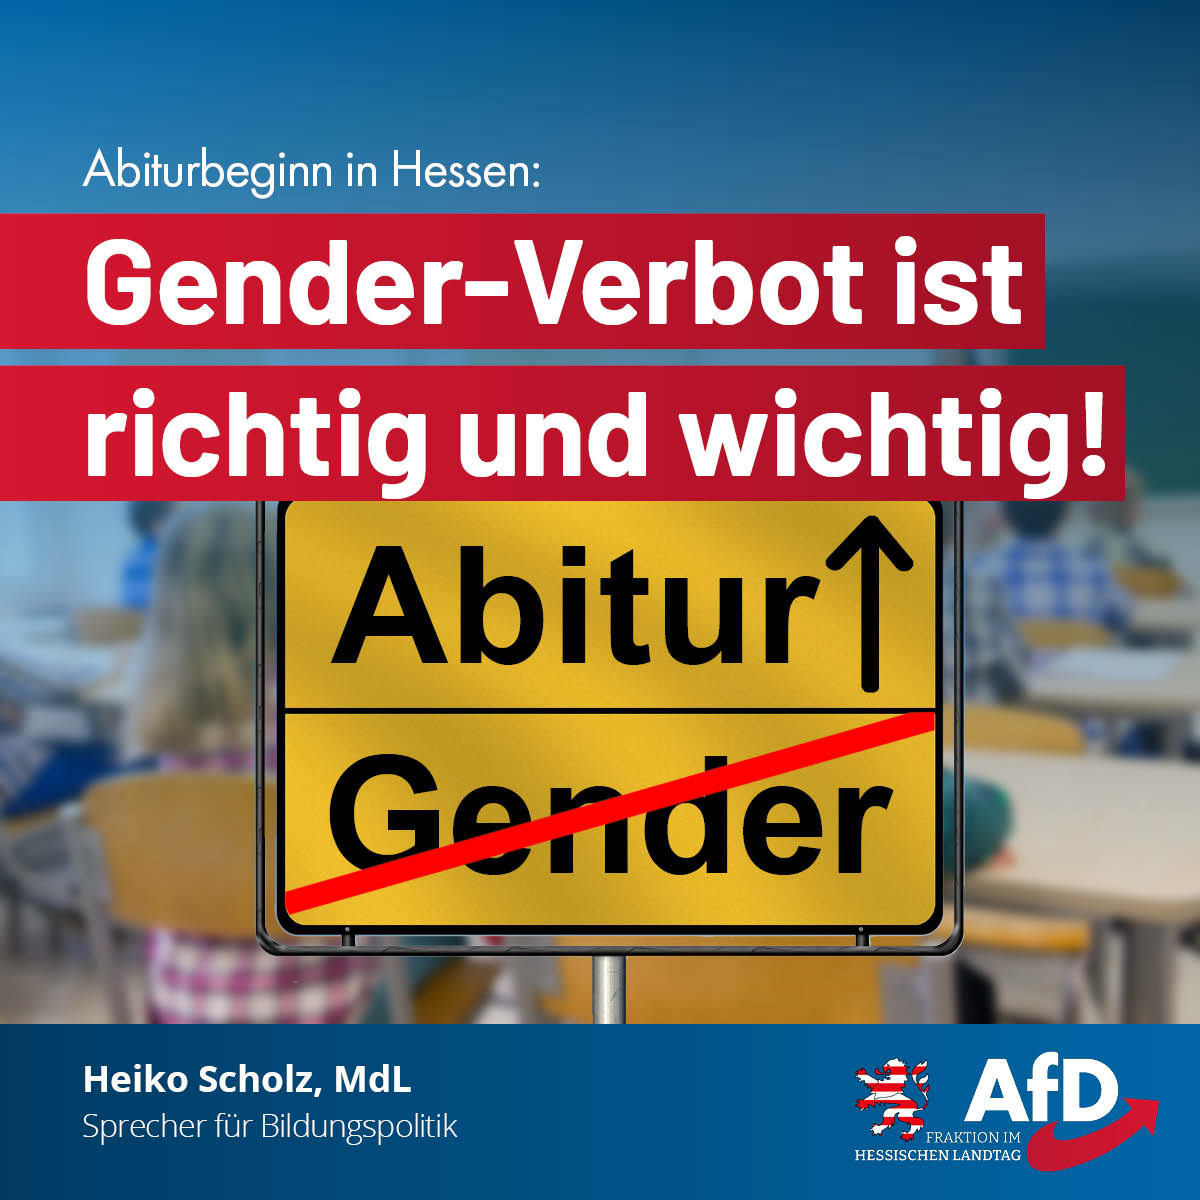 You are currently viewing Abiturbeginn in Hessen: Gender-Verbot ist richtig und wichtig